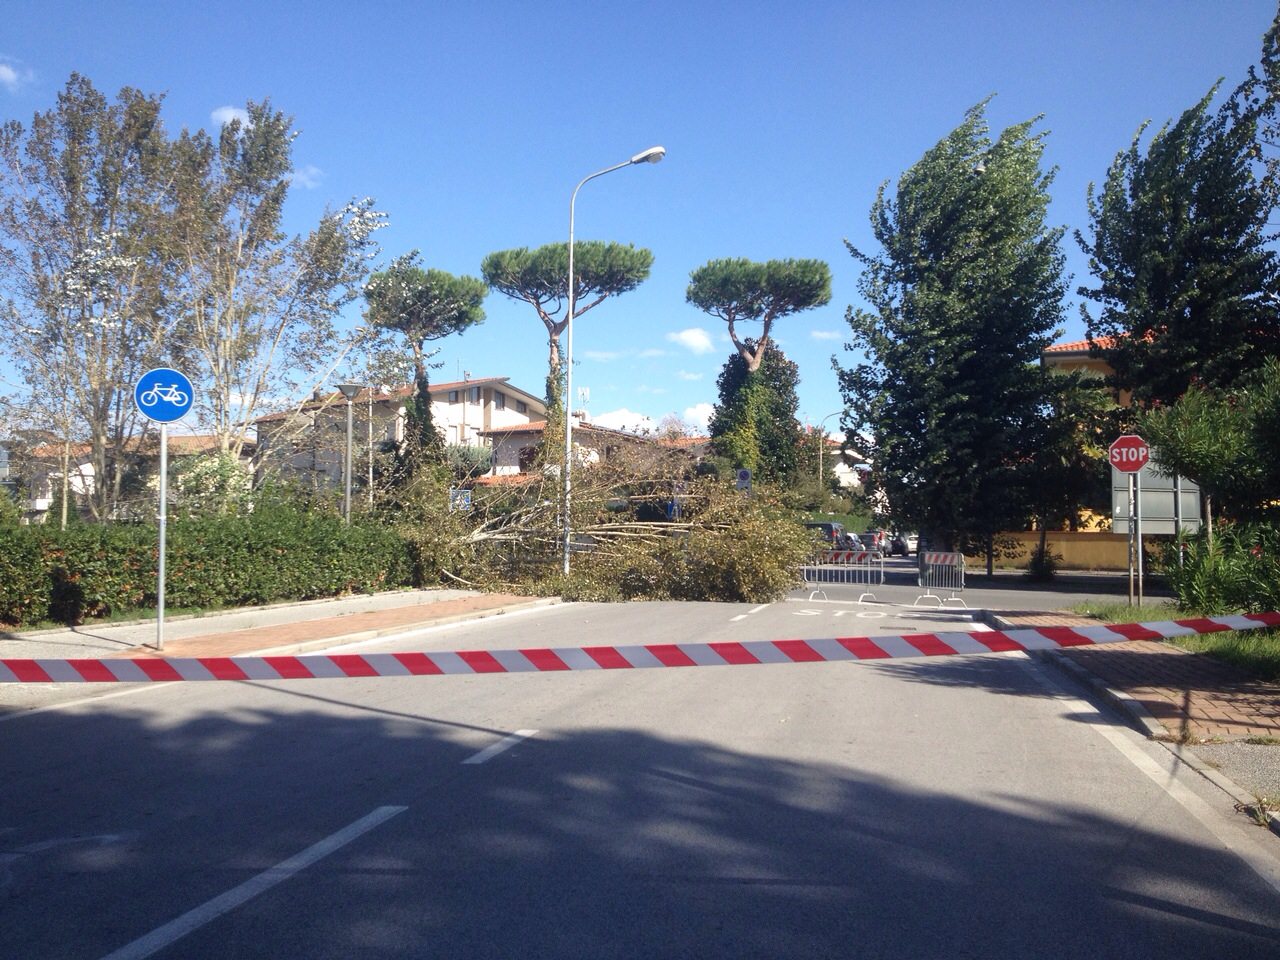 Vento forte: alberi caduti in mezzo alla strada a Viareggio e Forte dei Marmi